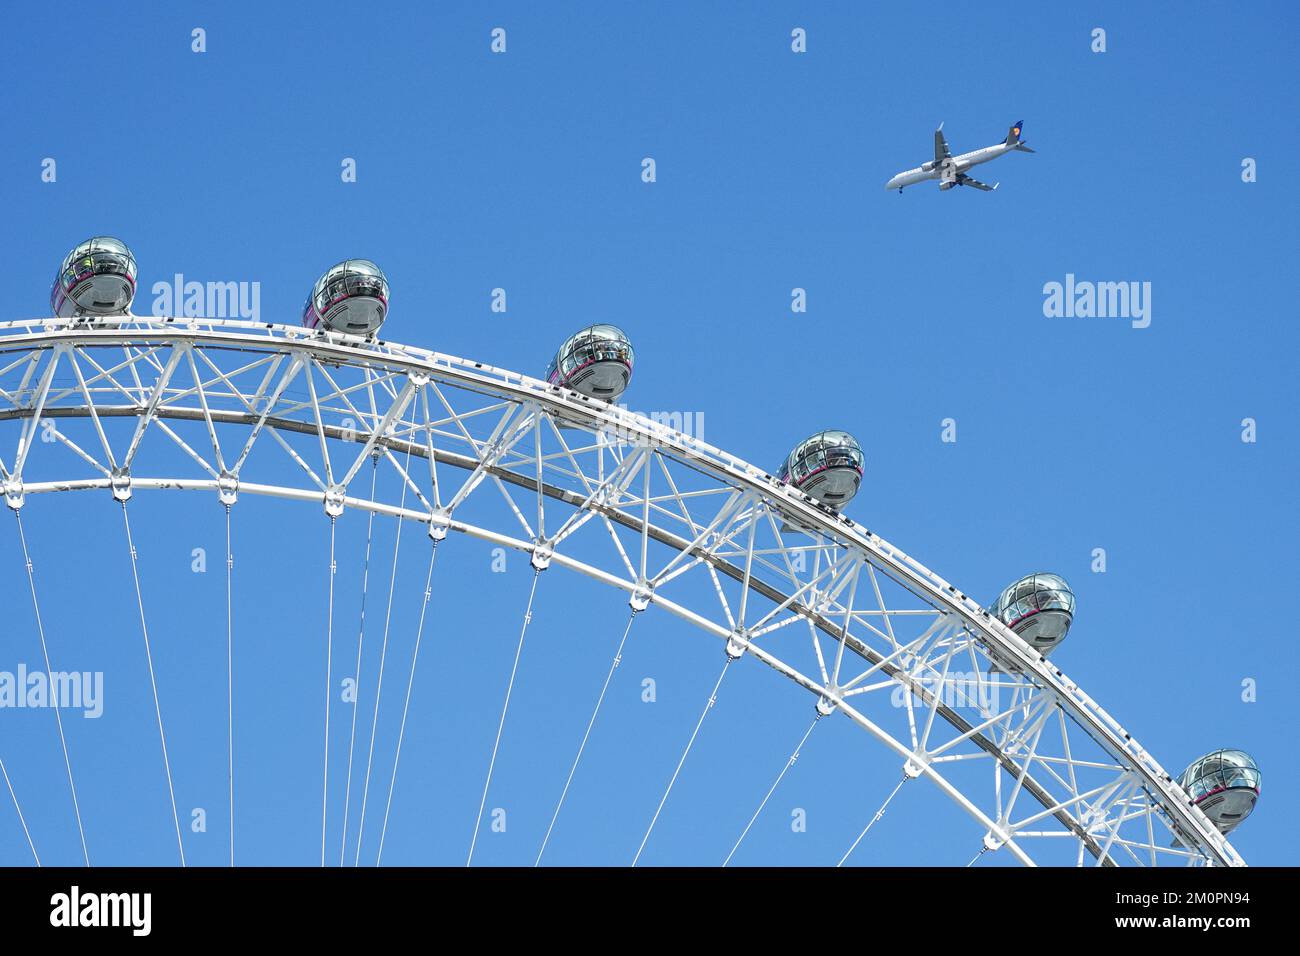 London Eye Ferris Wheel capsules sur ciel bleu clair, Londres Angleterre Royaume-Uni Banque D'Images